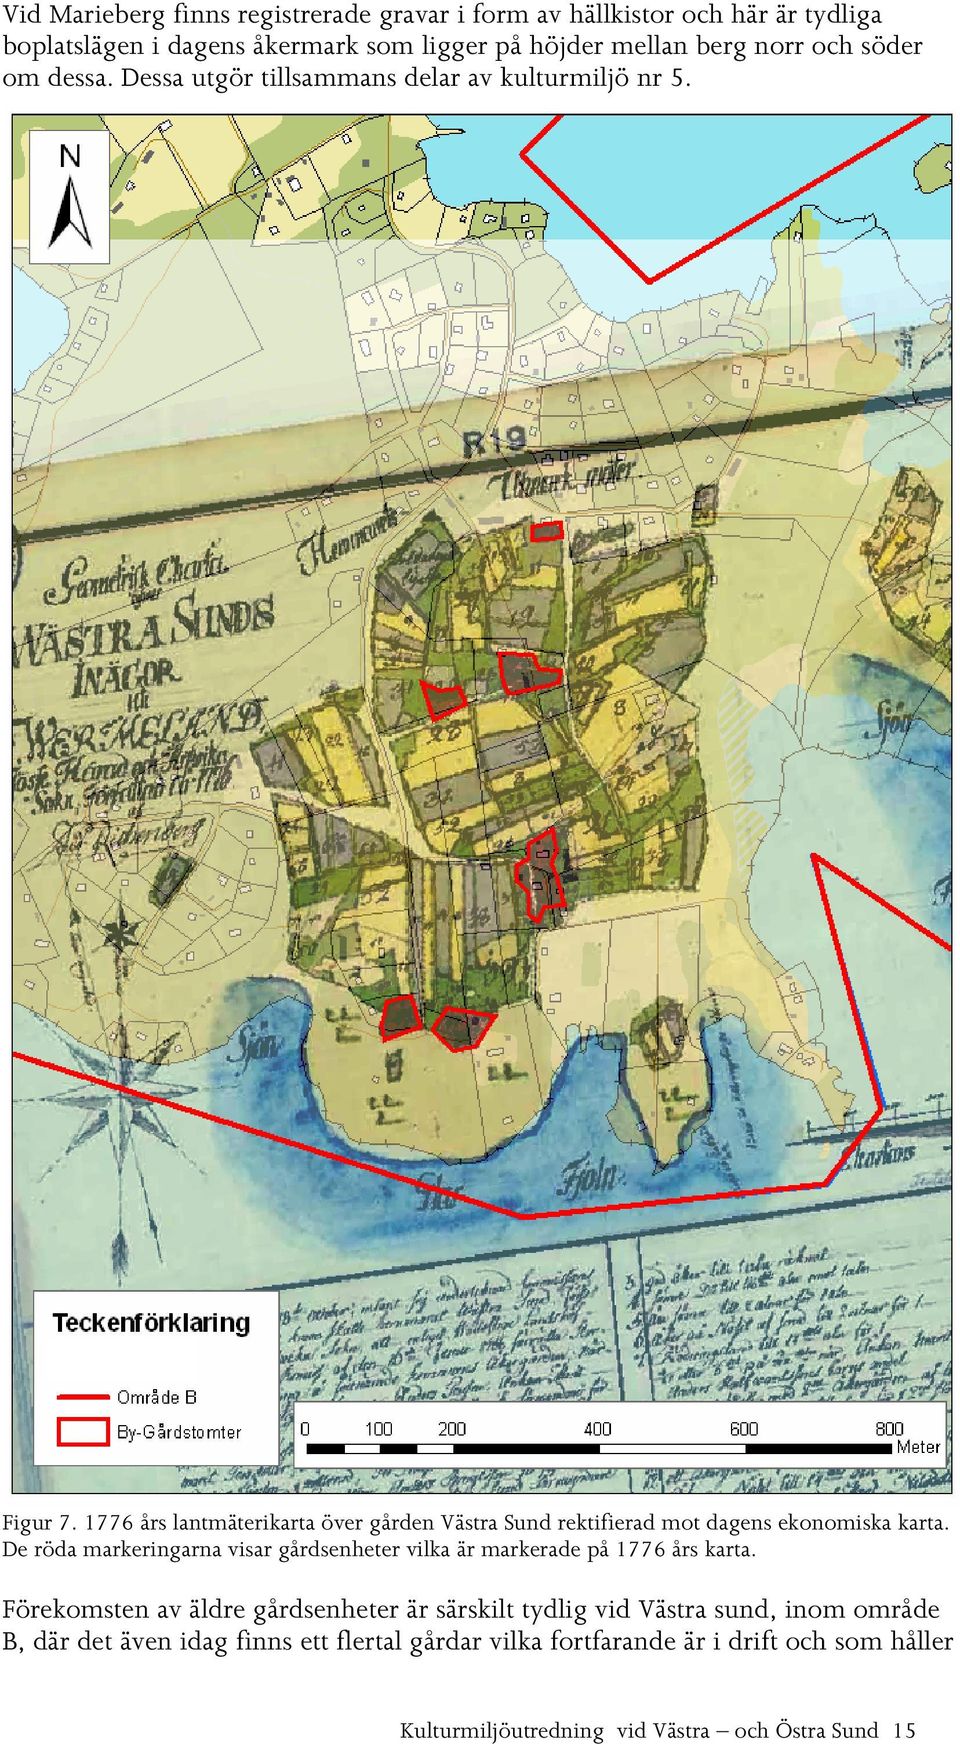 1776 års lantmäterikarta över gården Västra Sund rektifierad mot dagens ekonomiska karta.